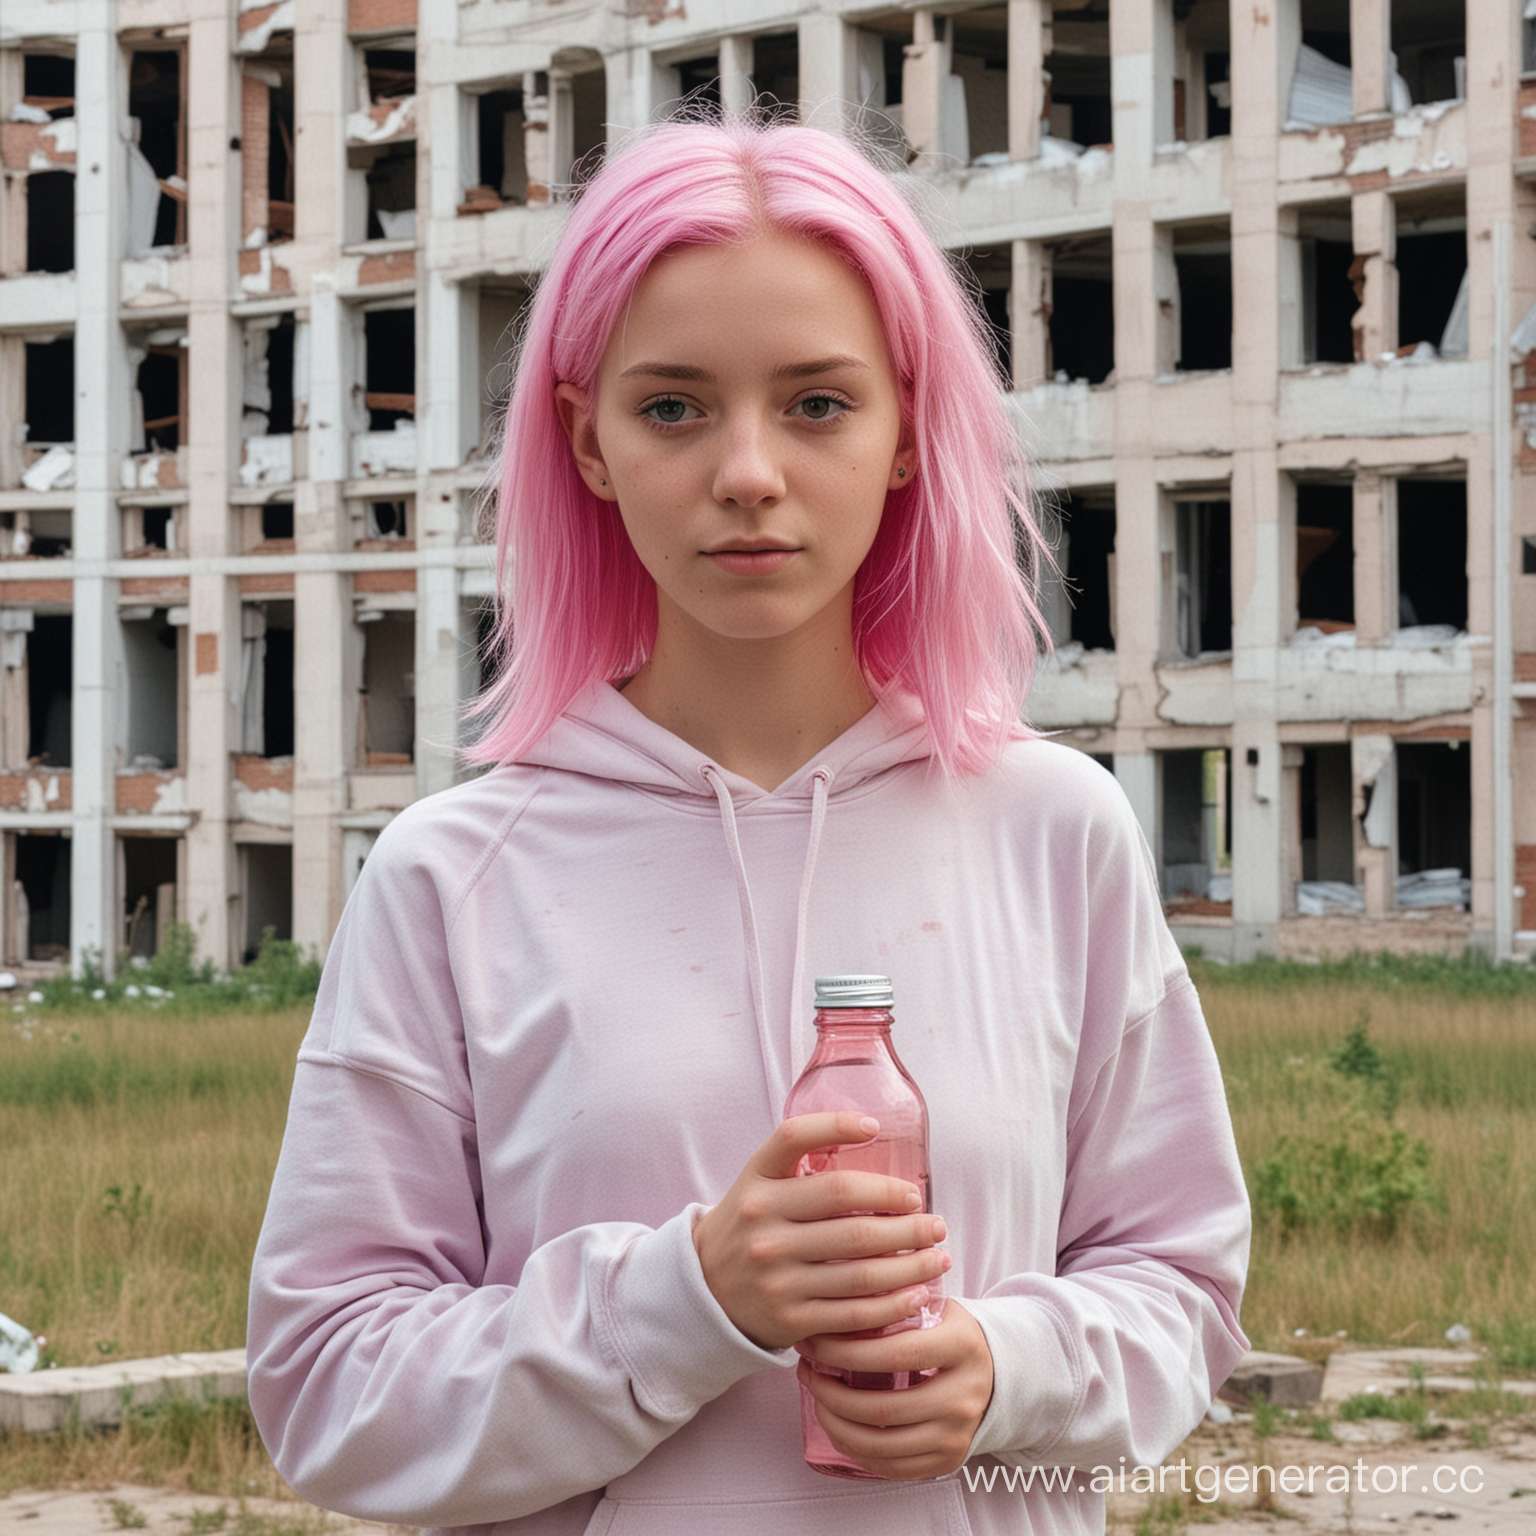 Девочка 16 лет с неформальной внешностью и розовыми волосами держит бутылку. Она стоит возле заброшенной многоэтажки и смотрит в камеру